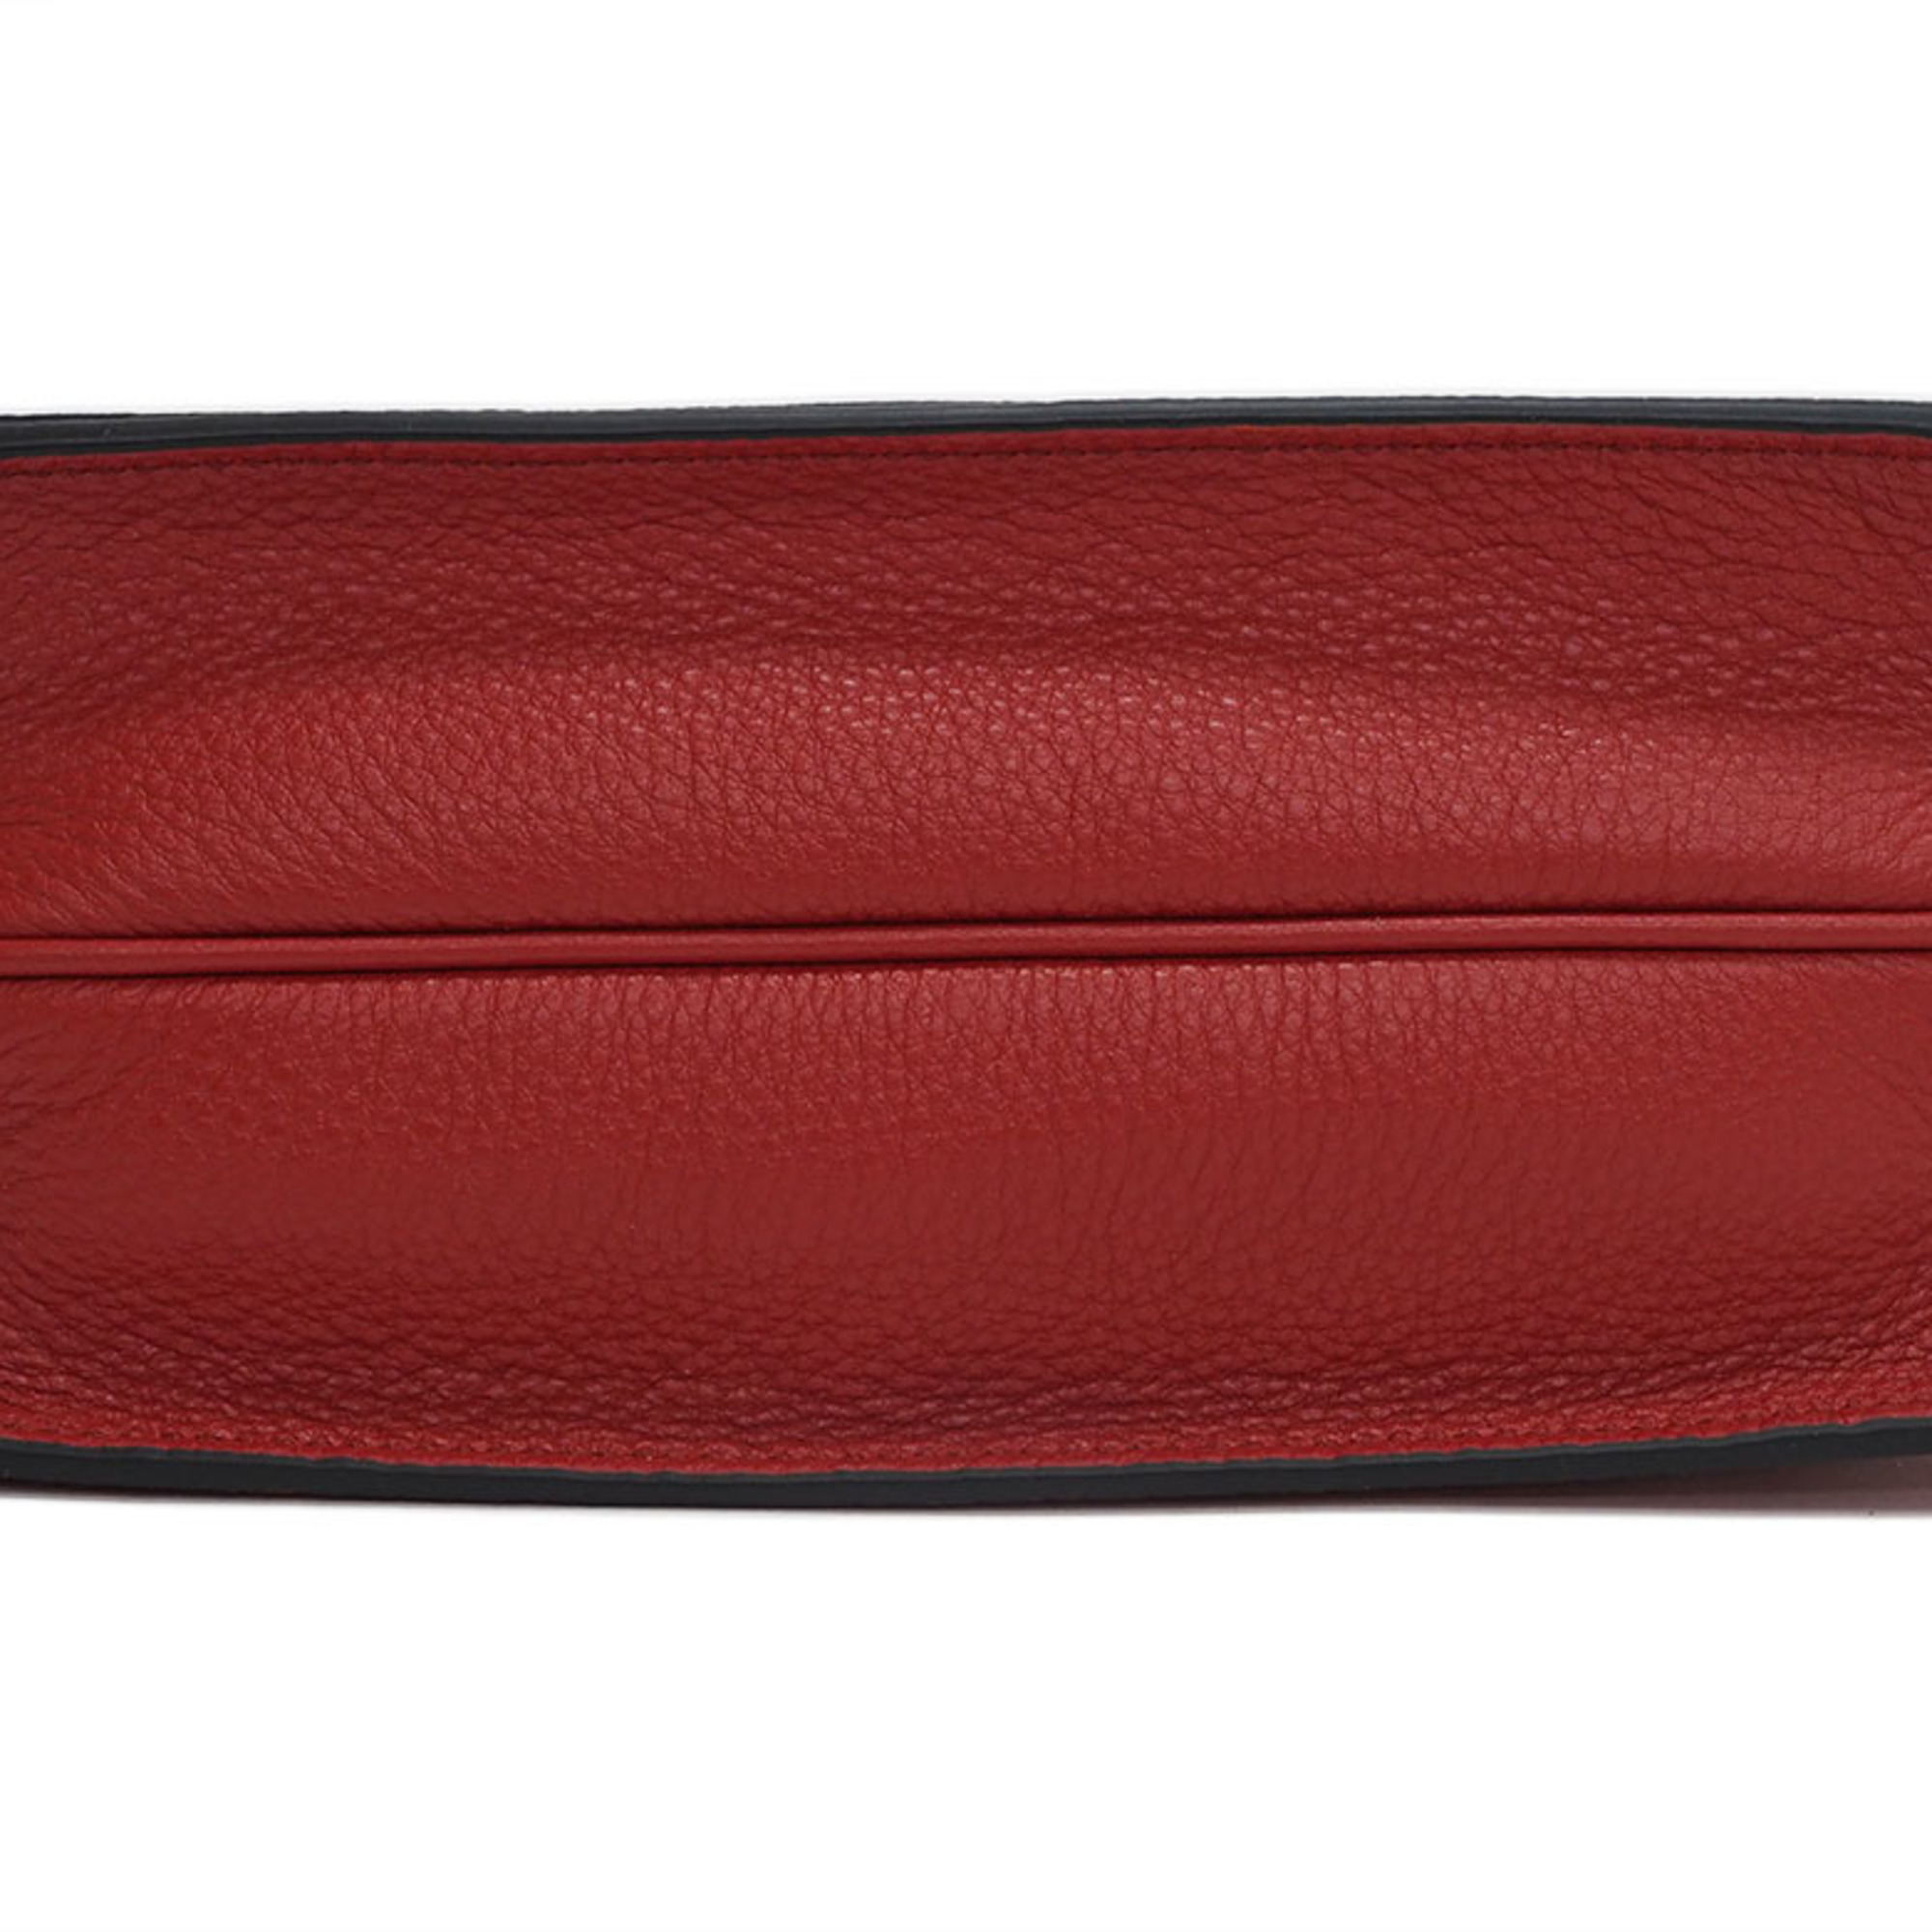 Prada Leather Flap Shoulder Bag 1BD102 Clutch Red Ladies Pochette PRADA